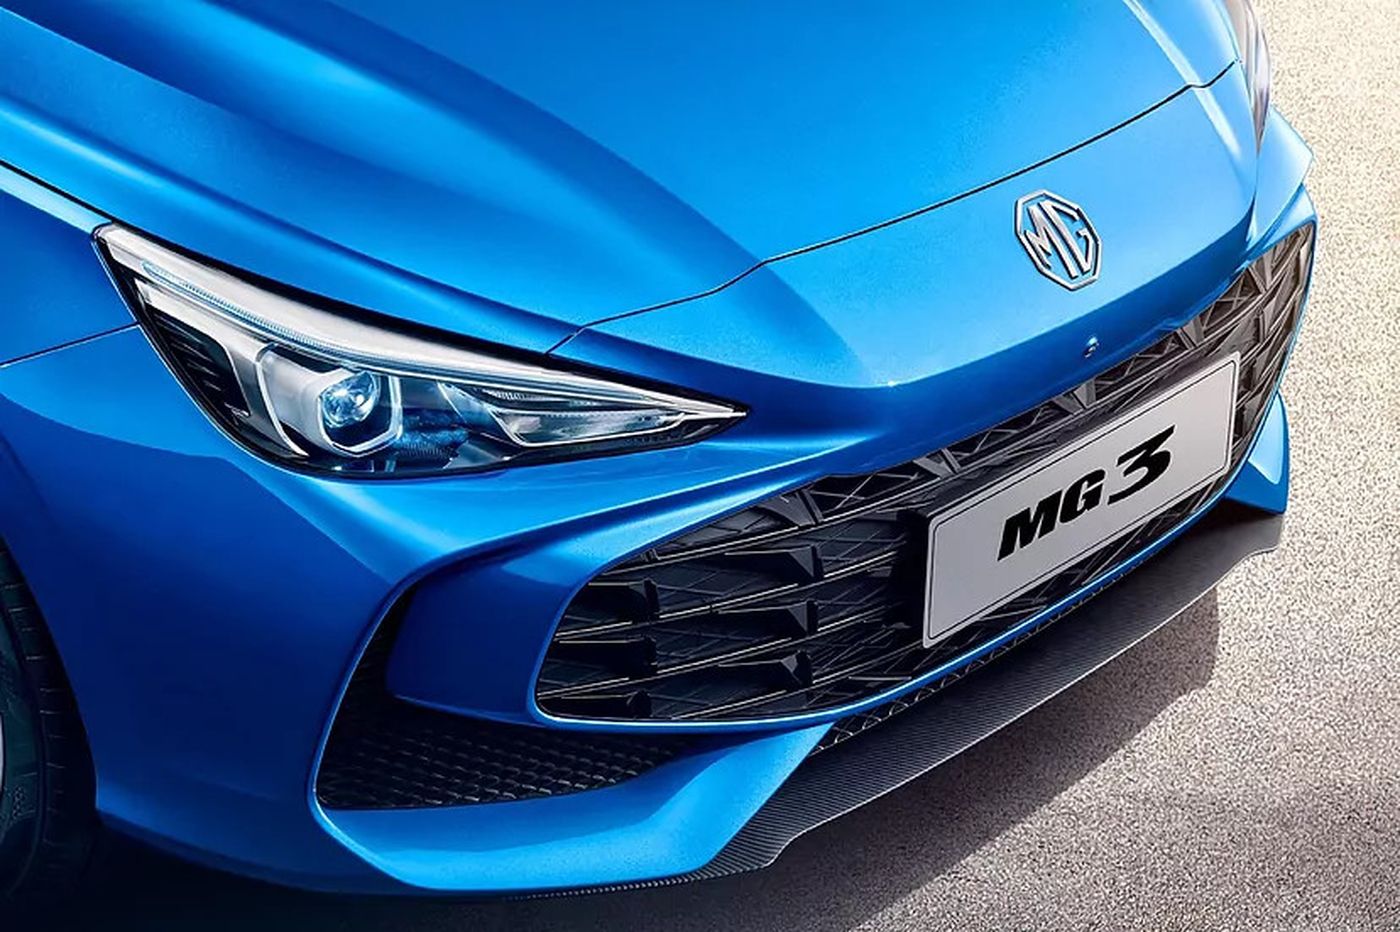 El nuevo MG3 Hybrid se presentará en el próximo Salón de Ginebra y será de conducción HEV